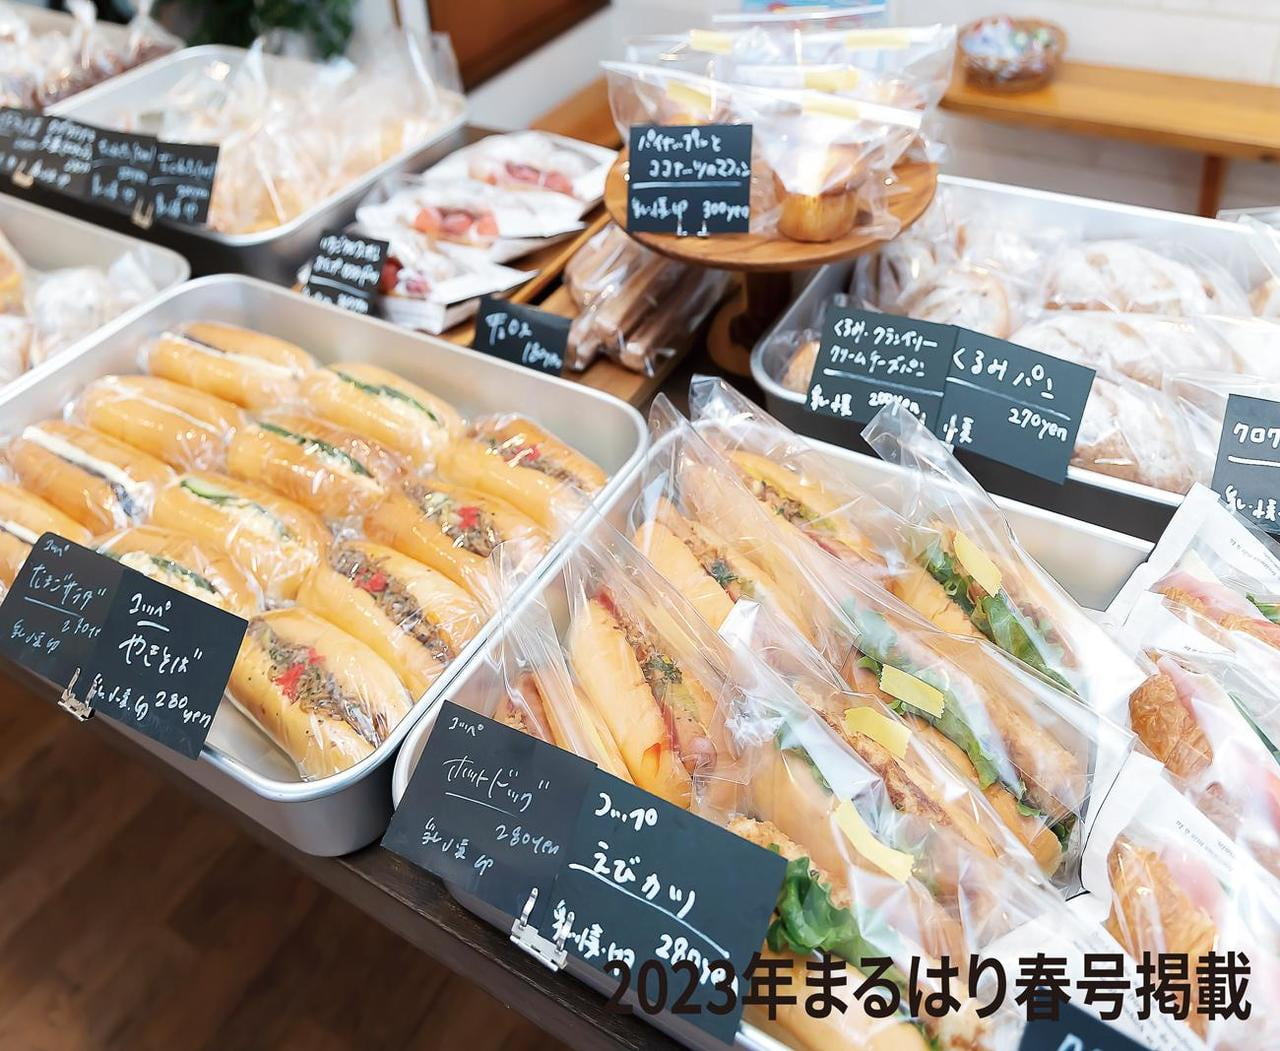 【太子】週1度のオープンが待ち遠しいパン屋さん「コッタパン」大人から子どもまで大人気のパンをチェック